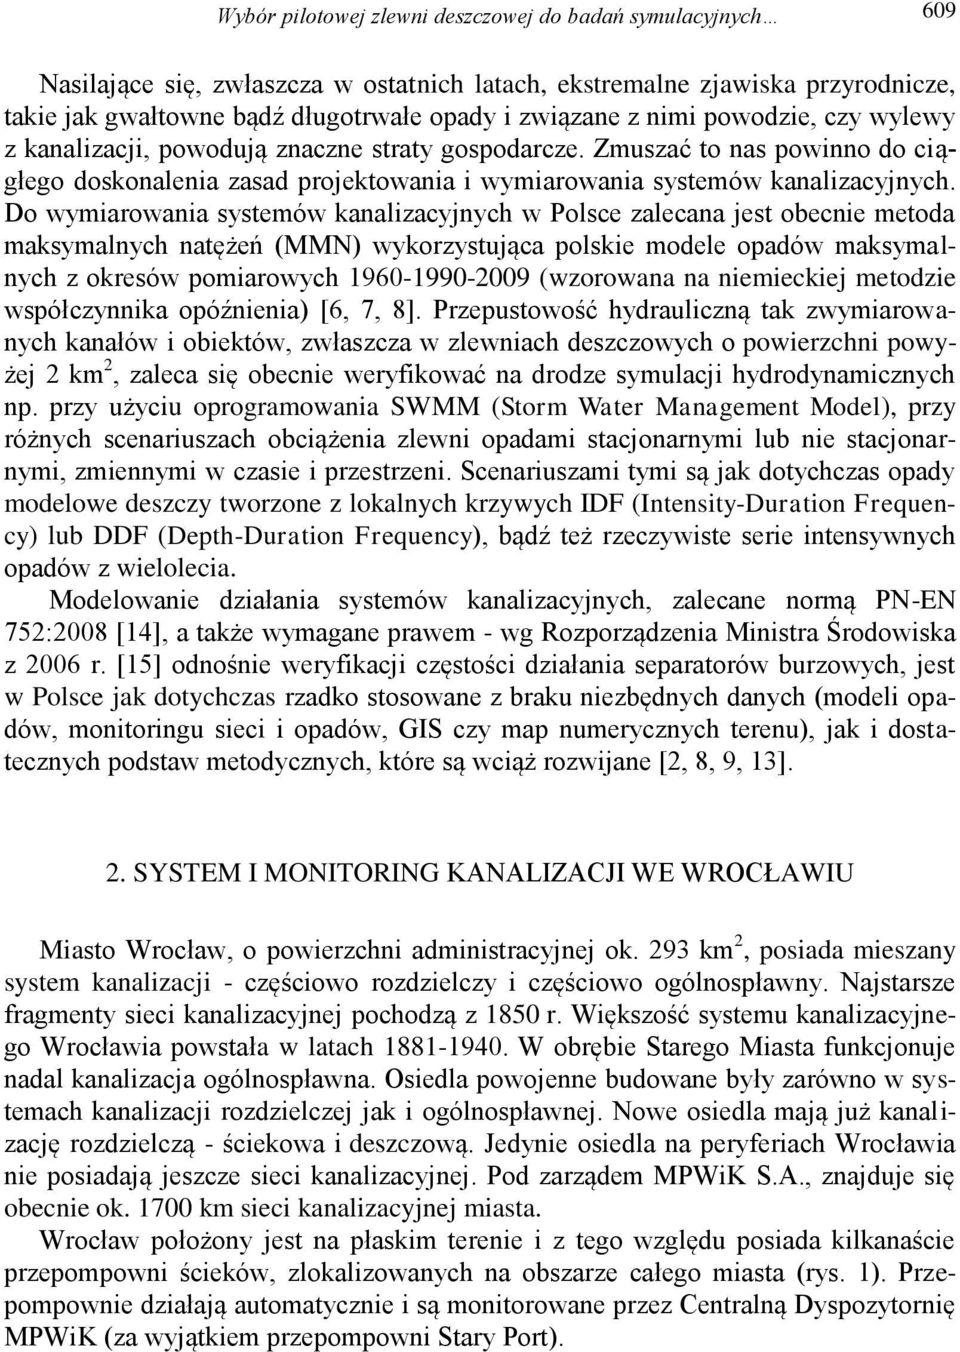 Do wymiarowania systemów kanalizacyjnych w Polsce zalecana jest obecnie metoda maksymalnych natężeń (MMN) wykorzystująca polskie modele opadów maksymalnych z okresów pomiarowych 1960-1990-2009